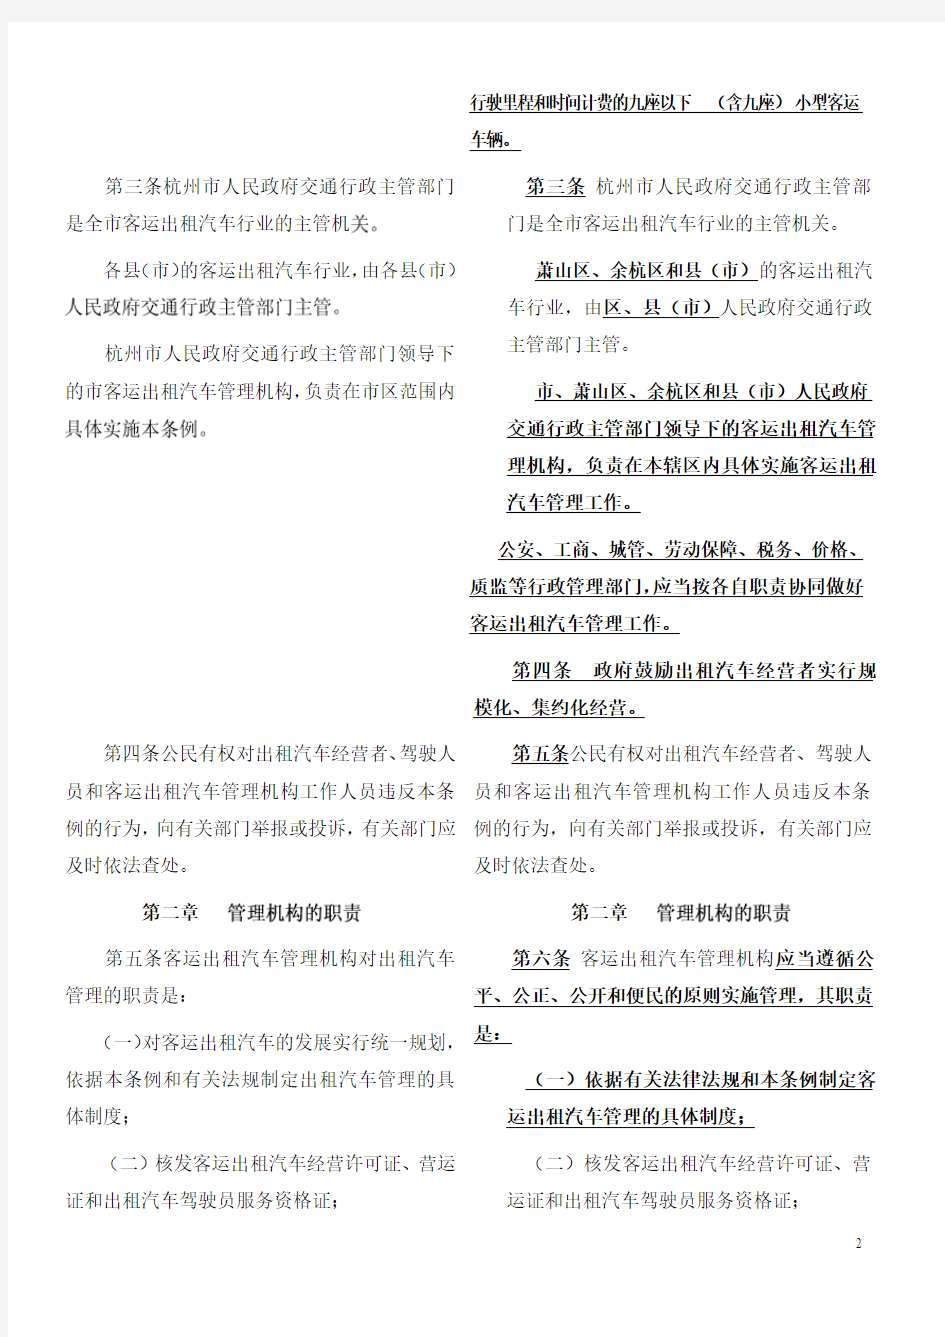 《杭州市客运出租汽车管理条例》修改对照表